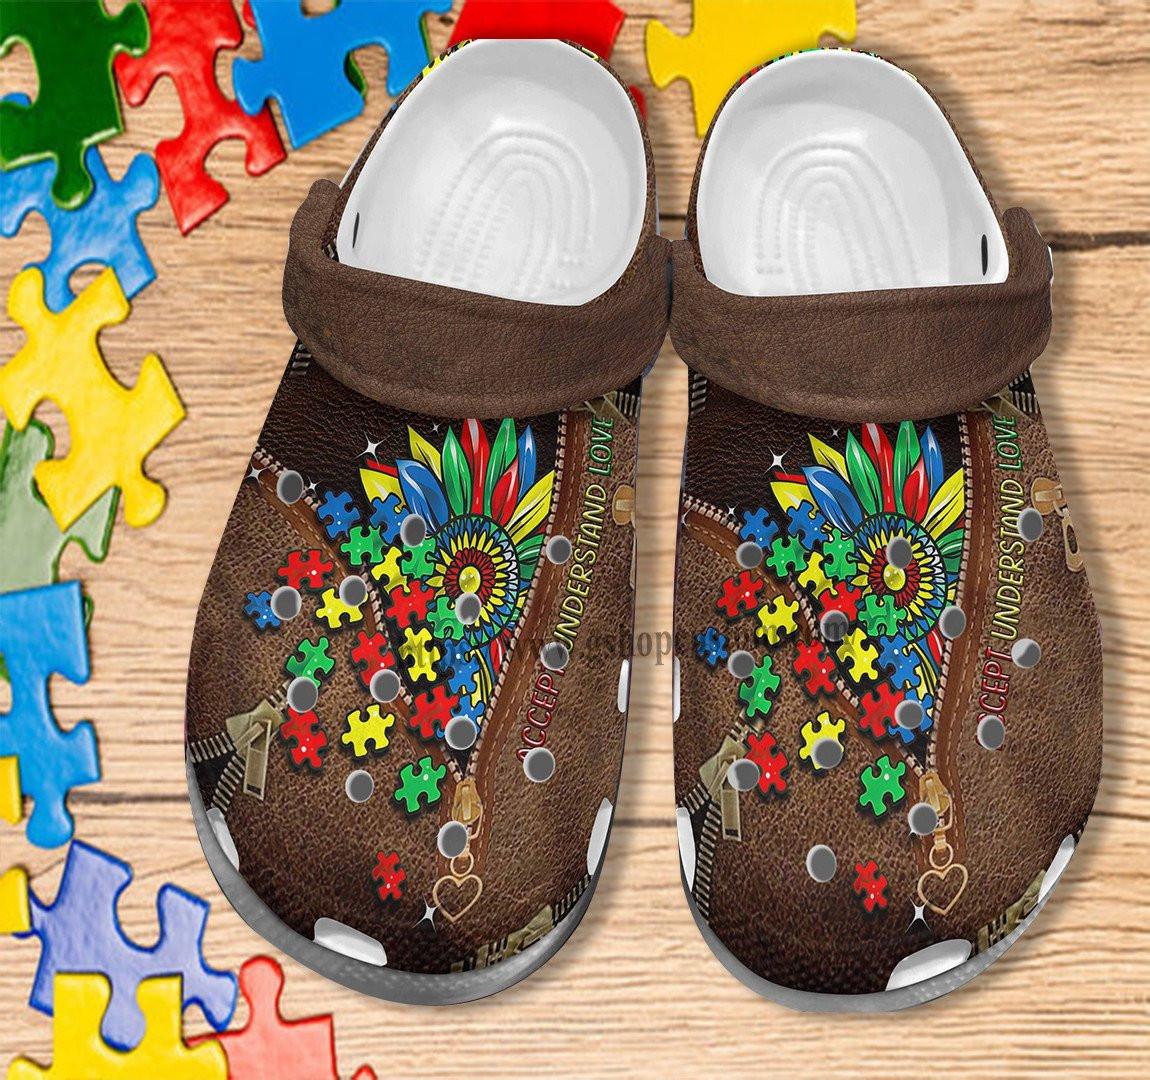 Autism Sunflower Leather Crocs Shoes - Accept Under Stand Love Autism Shoes Croc Clogs